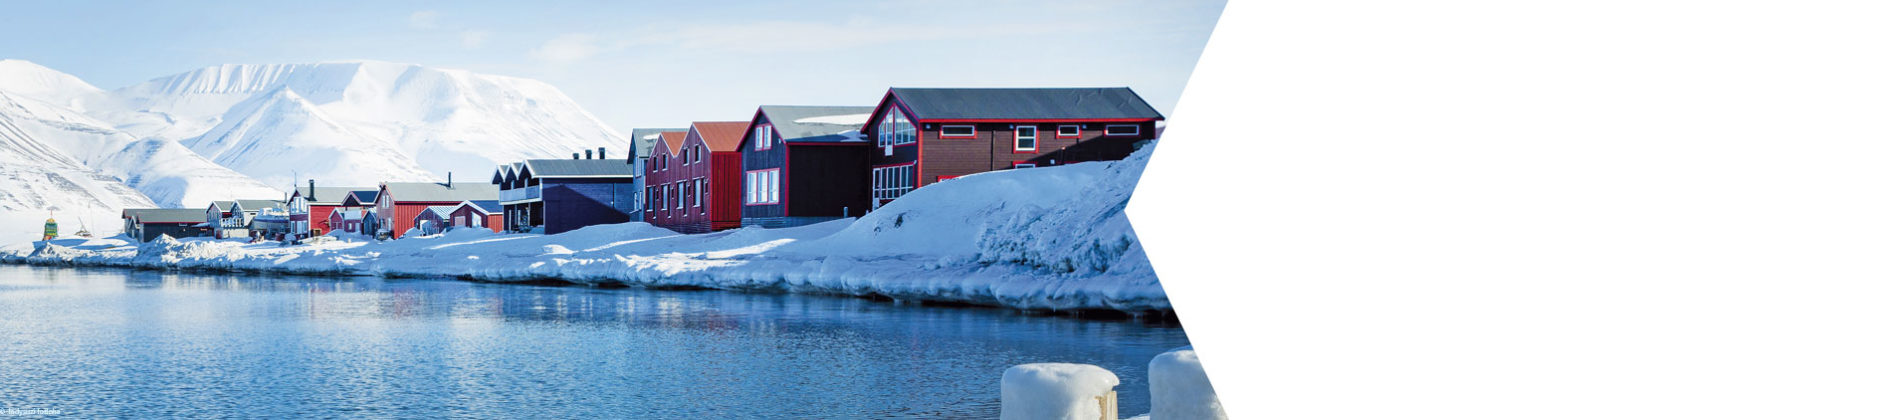 Spitzbergen ist eine zu Norwegen gehörende Inselgruppe im Nordatlantik.